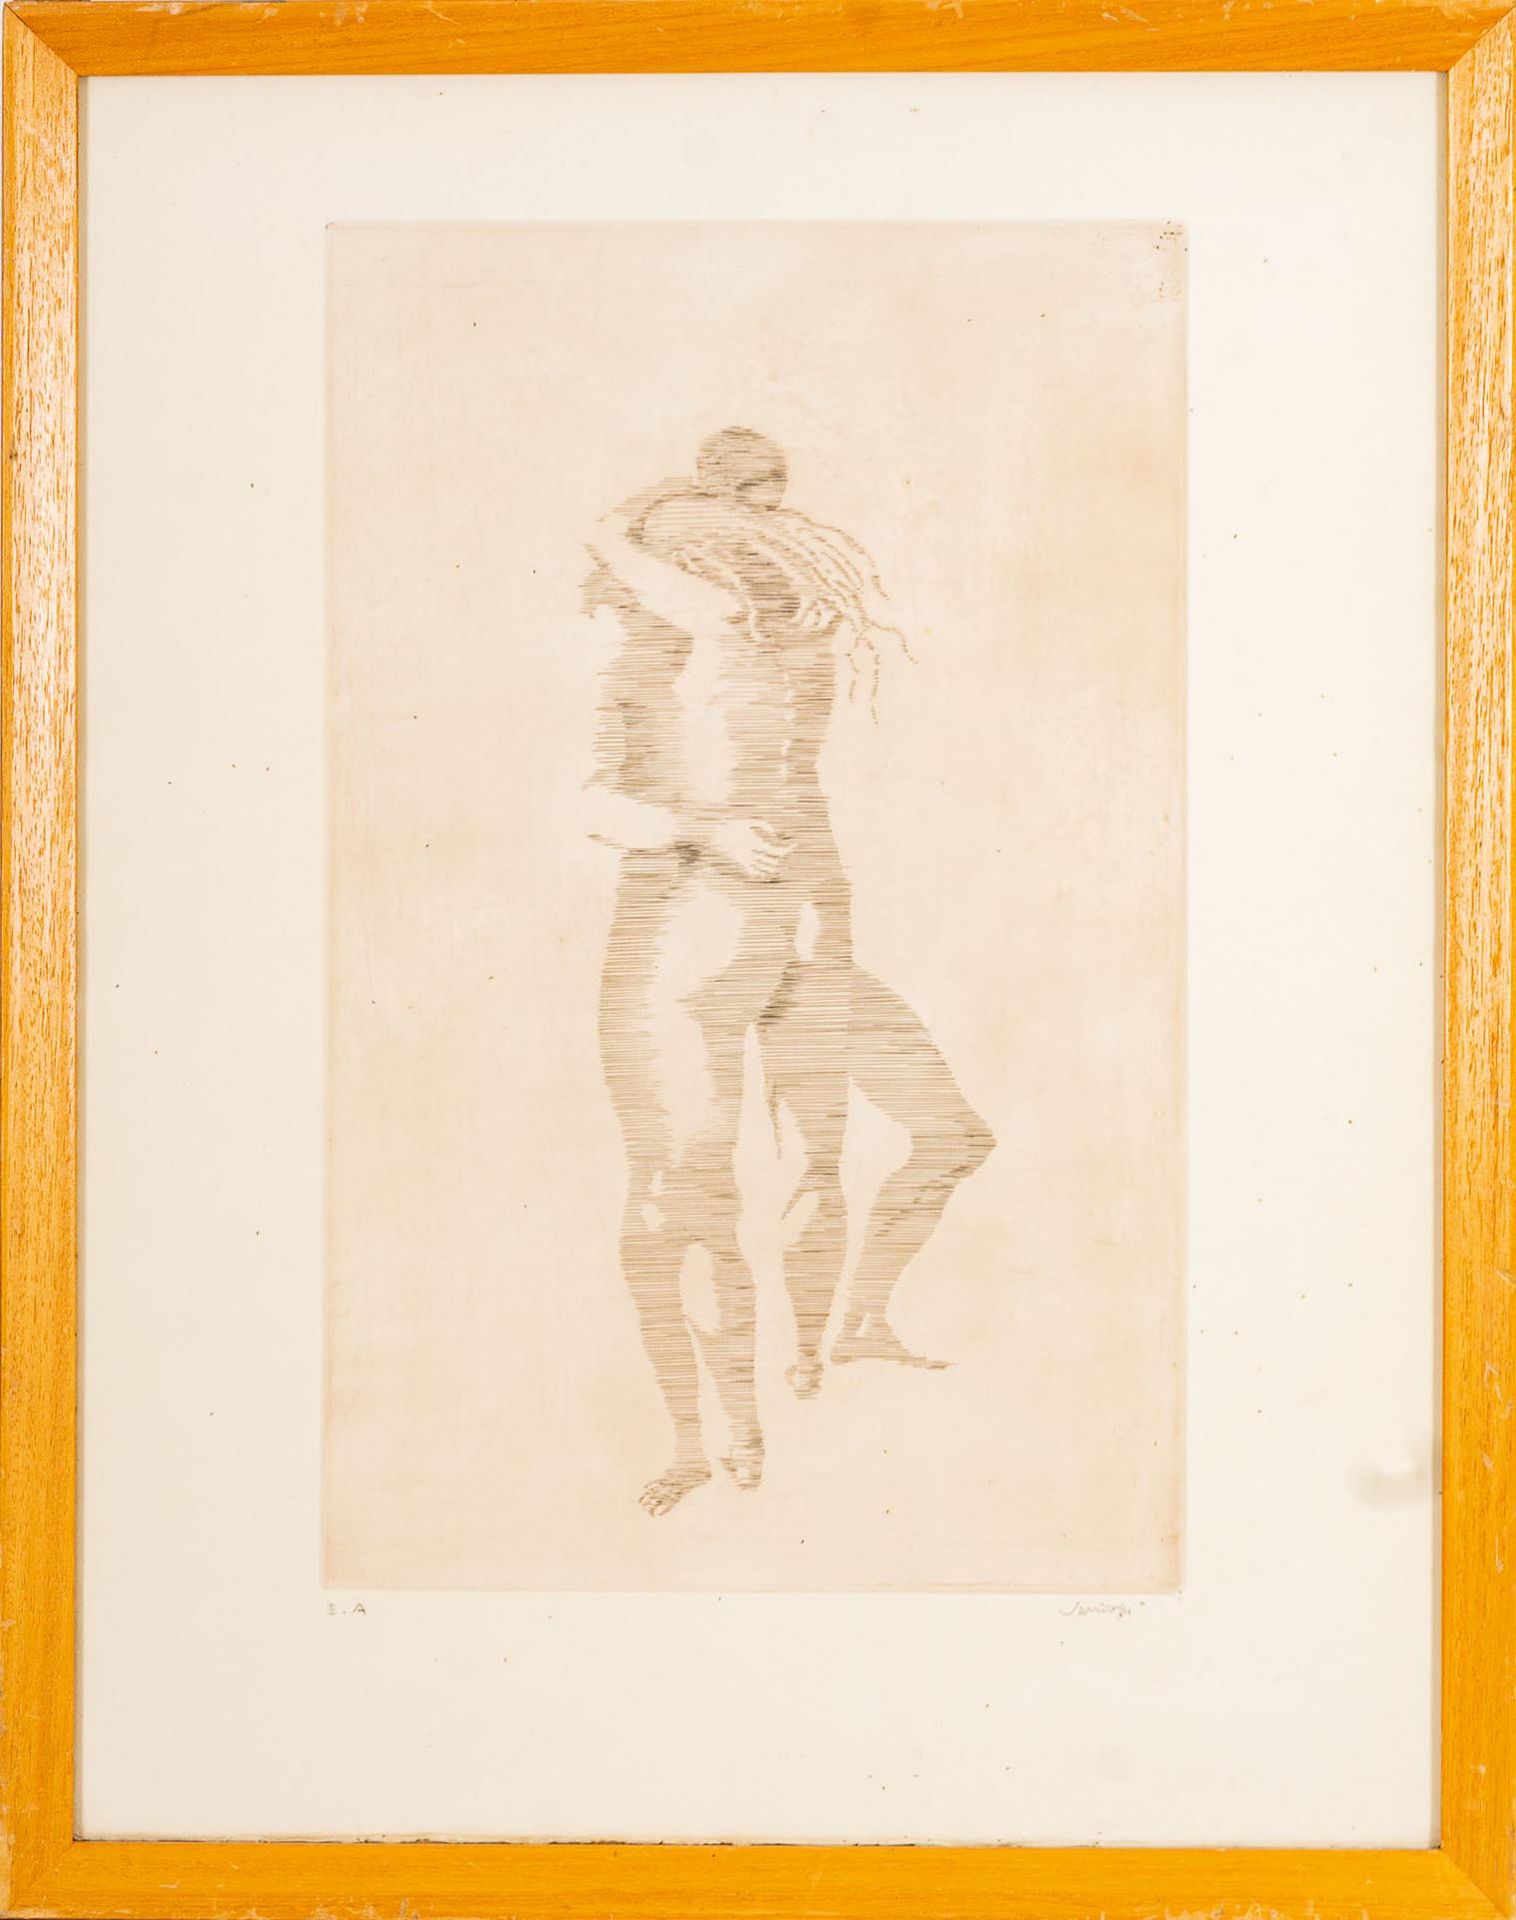 "Innige Umarmung", schemenhafte Darstellung zweier schraffierter nackter menschlicher Körper in inn